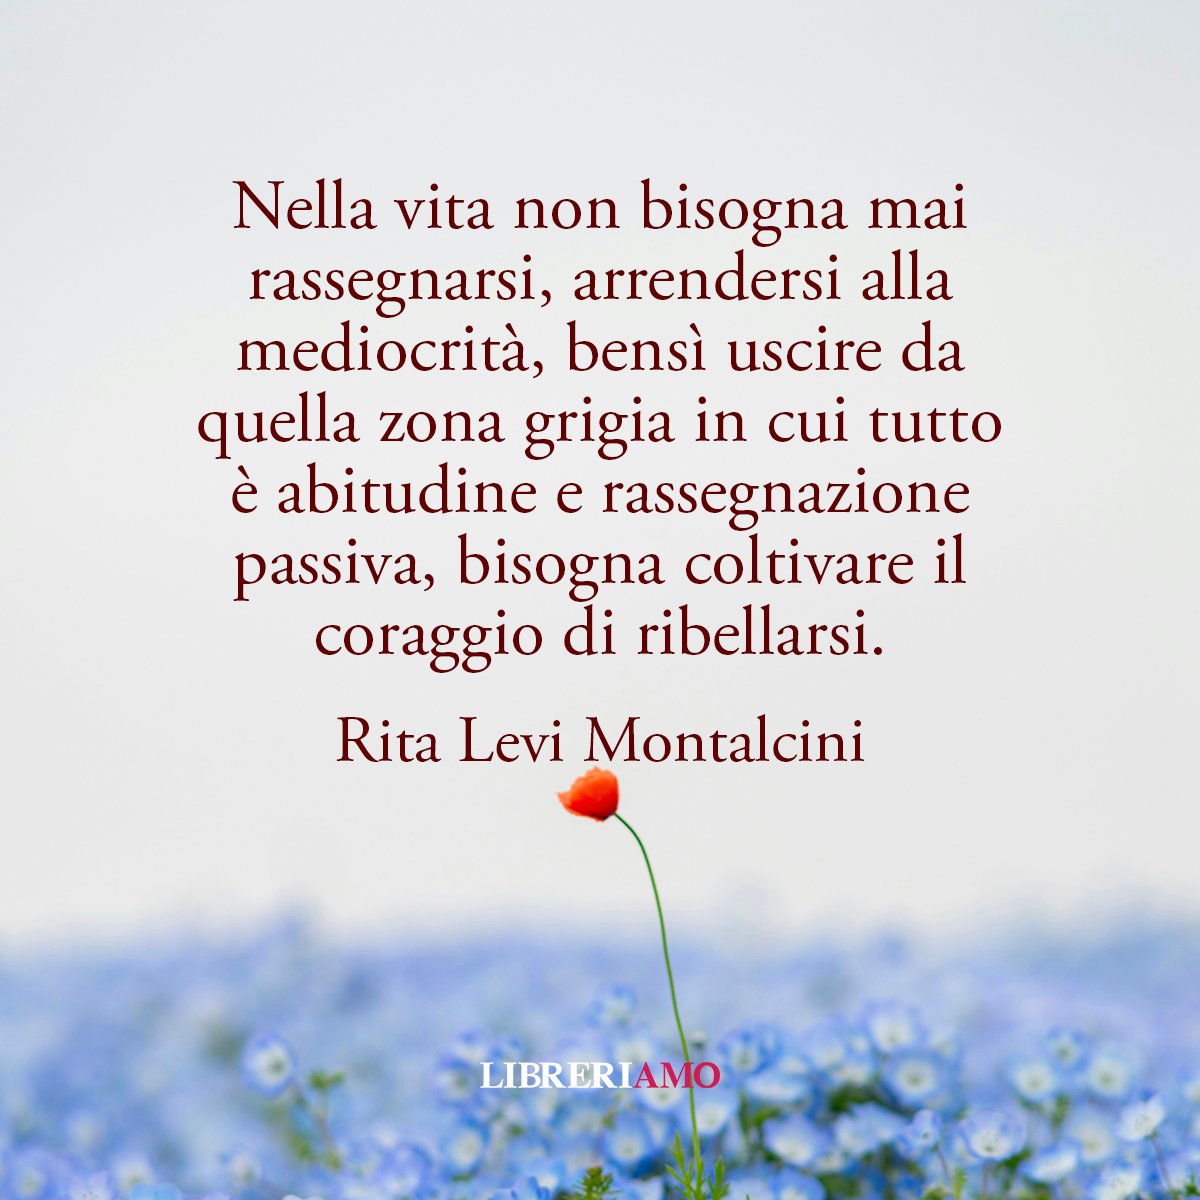 La mediocrità ci insegue, ci avvolge, chiede il sopravvento. Come dice una grande donna di scienza come Rita Levi Montalcini, bisogna avere la forza di reagire a tutto ciò che ci tira in basso. #Buongiorno! #13maggio